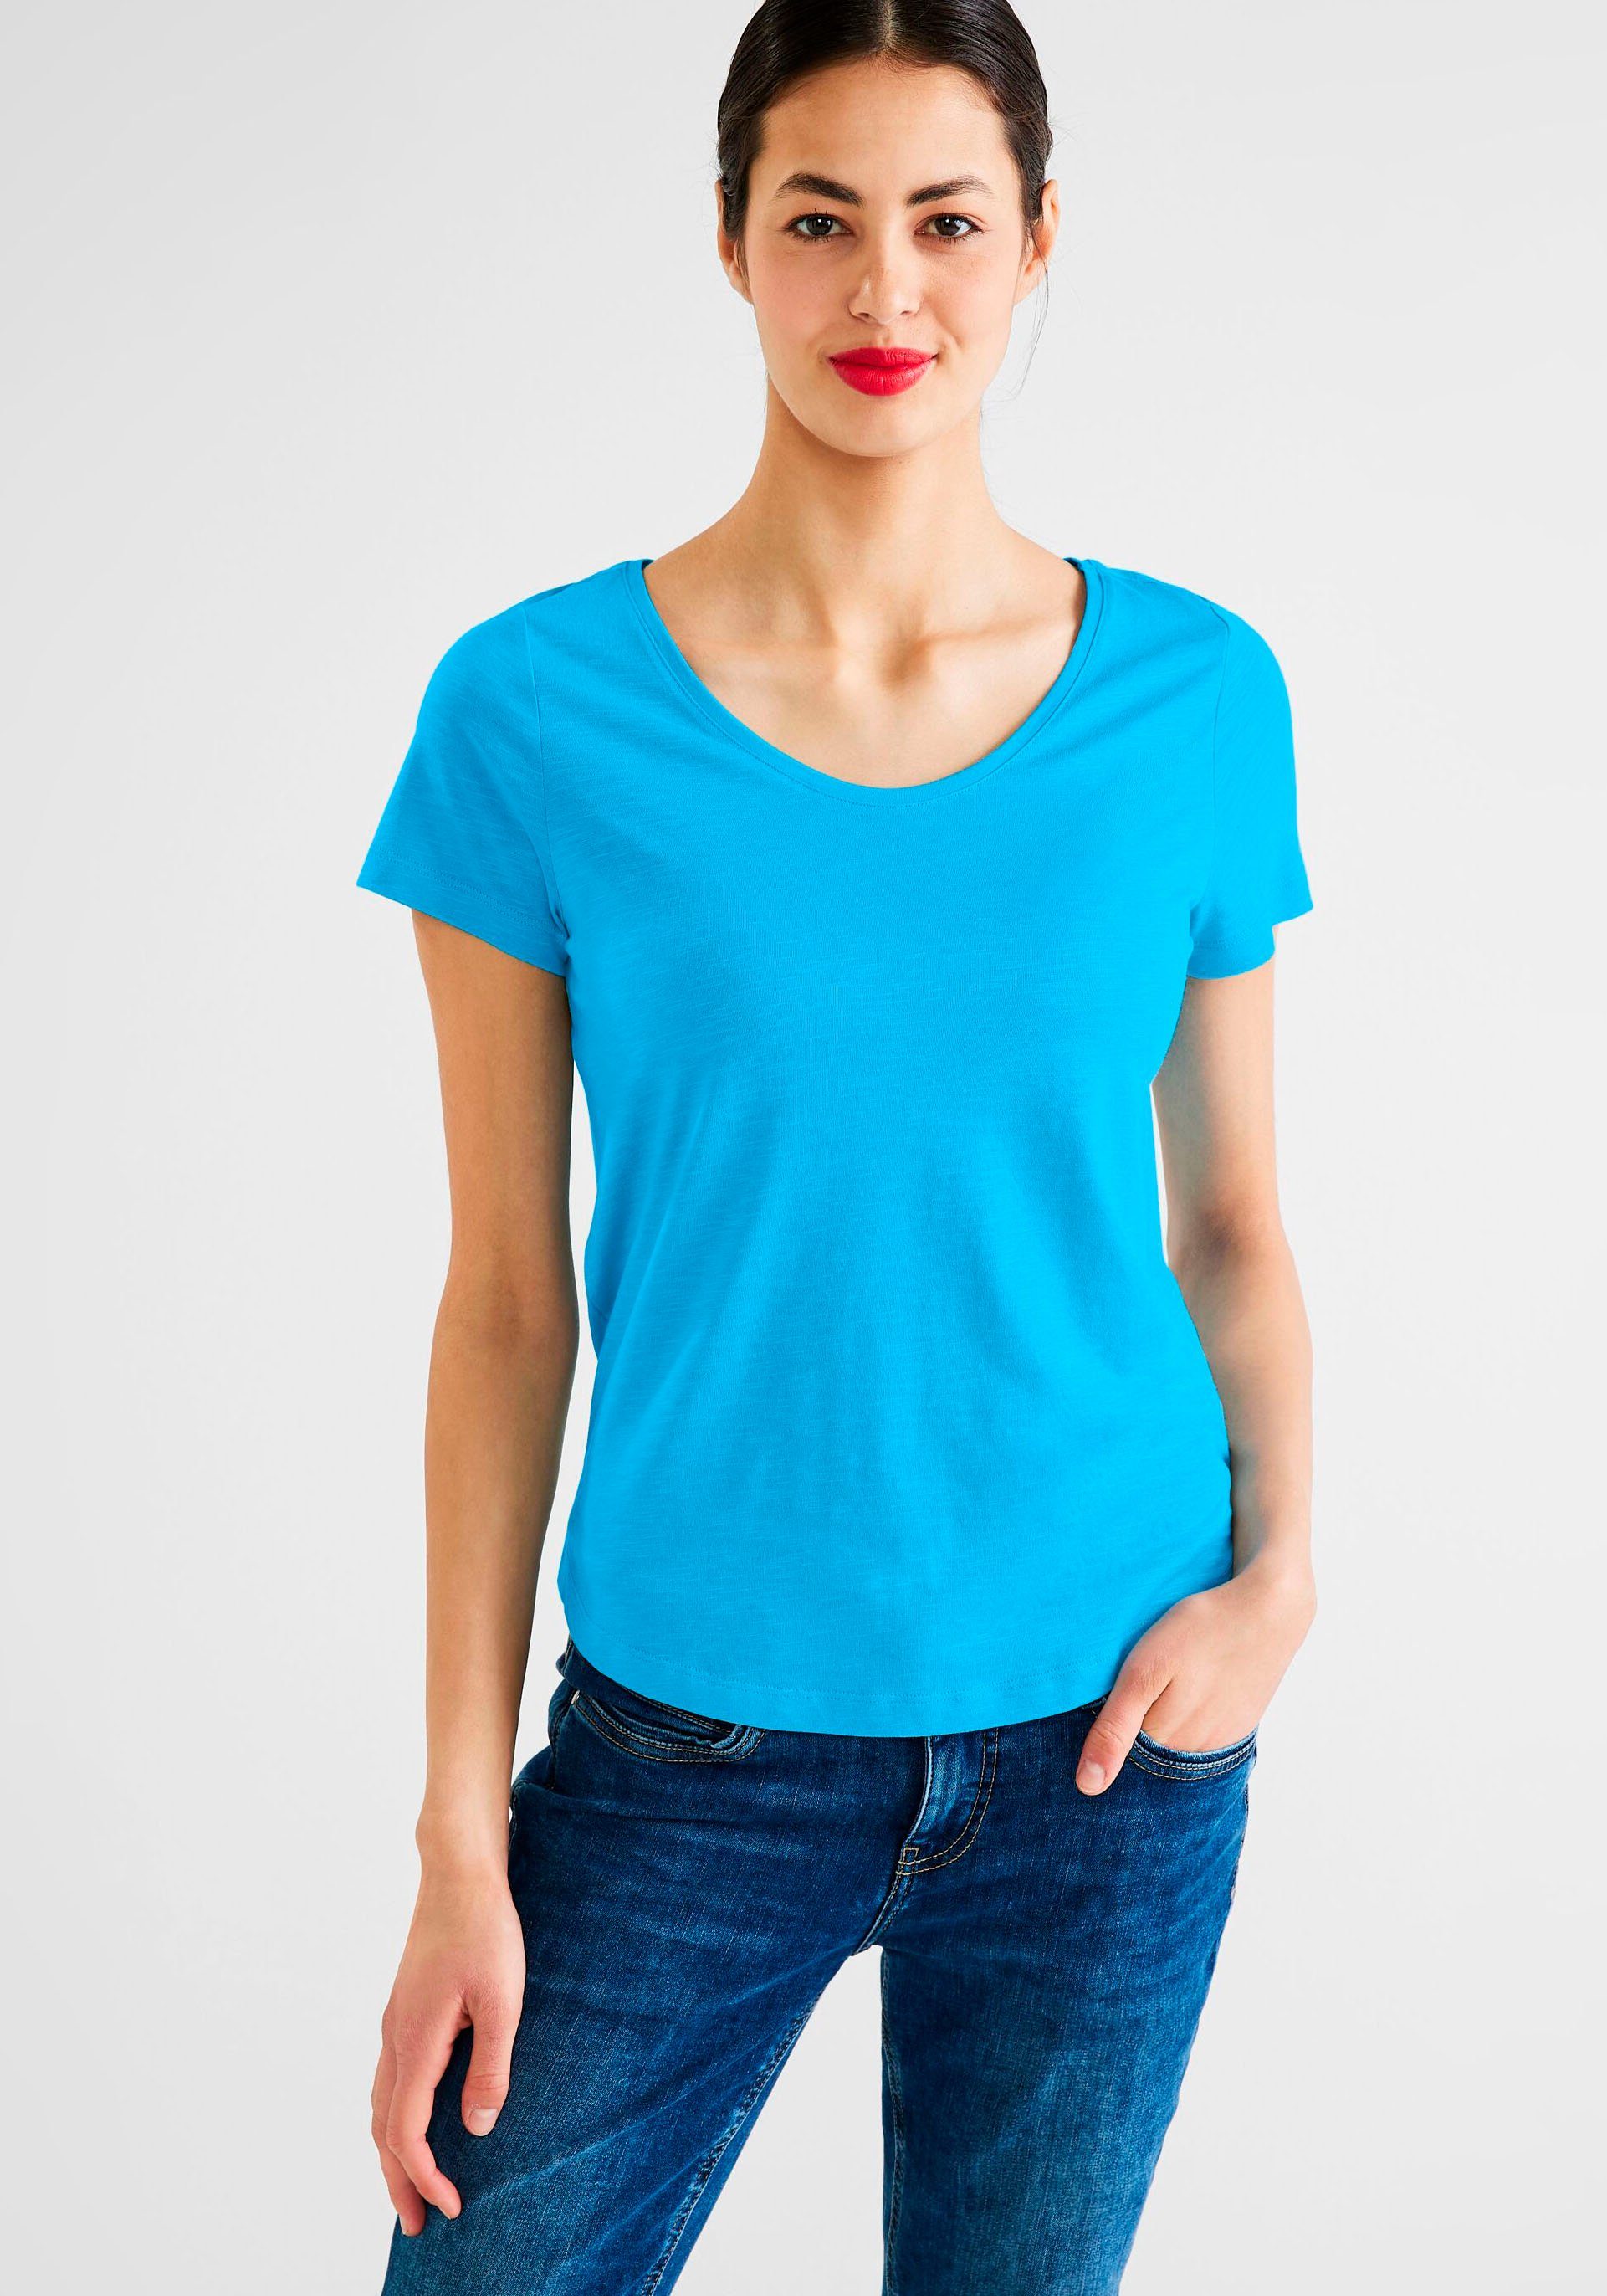 STREET ONE T-Shirt Style Gerda mit Rundhalsausschnitt blau